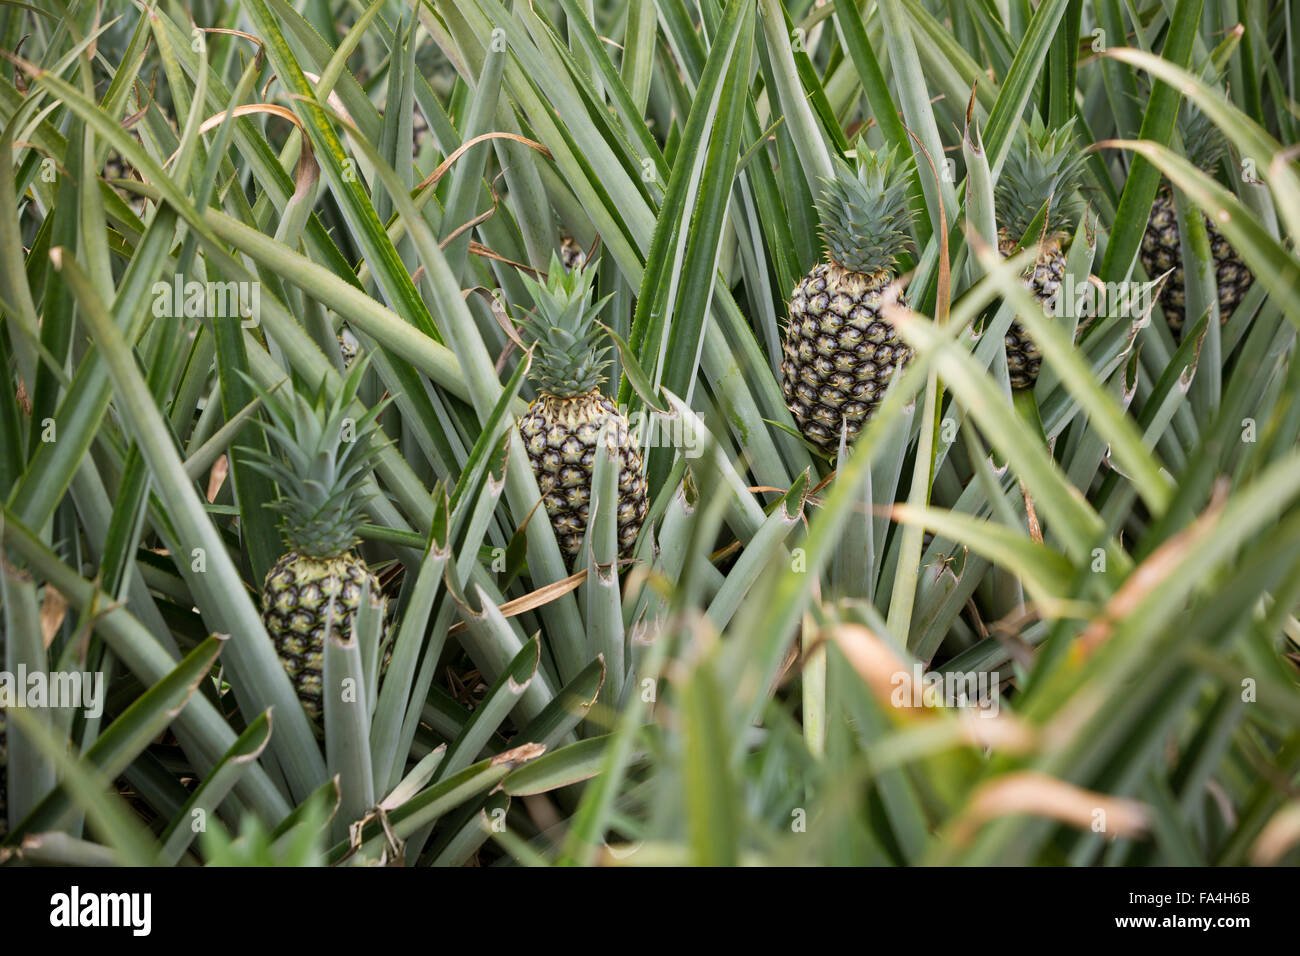 L'agriculture commerciale Fotobi ananas dans village, au Ghana. Banque D'Images